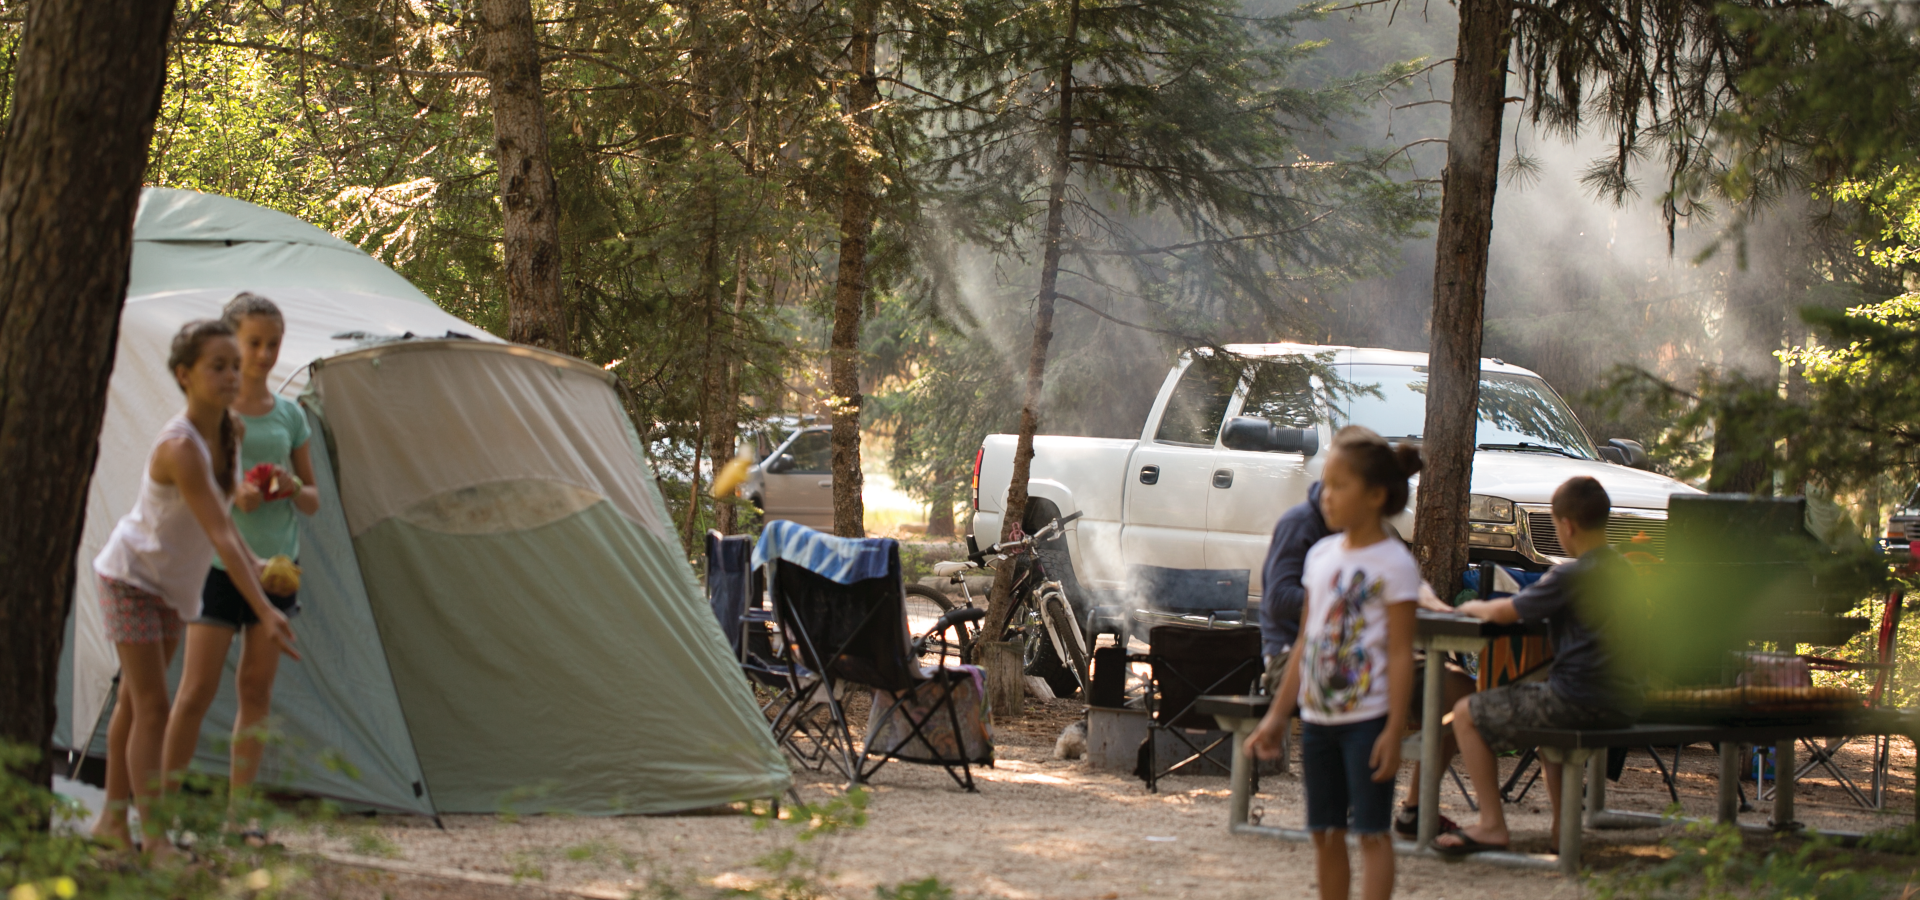 Camping in Idaho, Move to Idaho